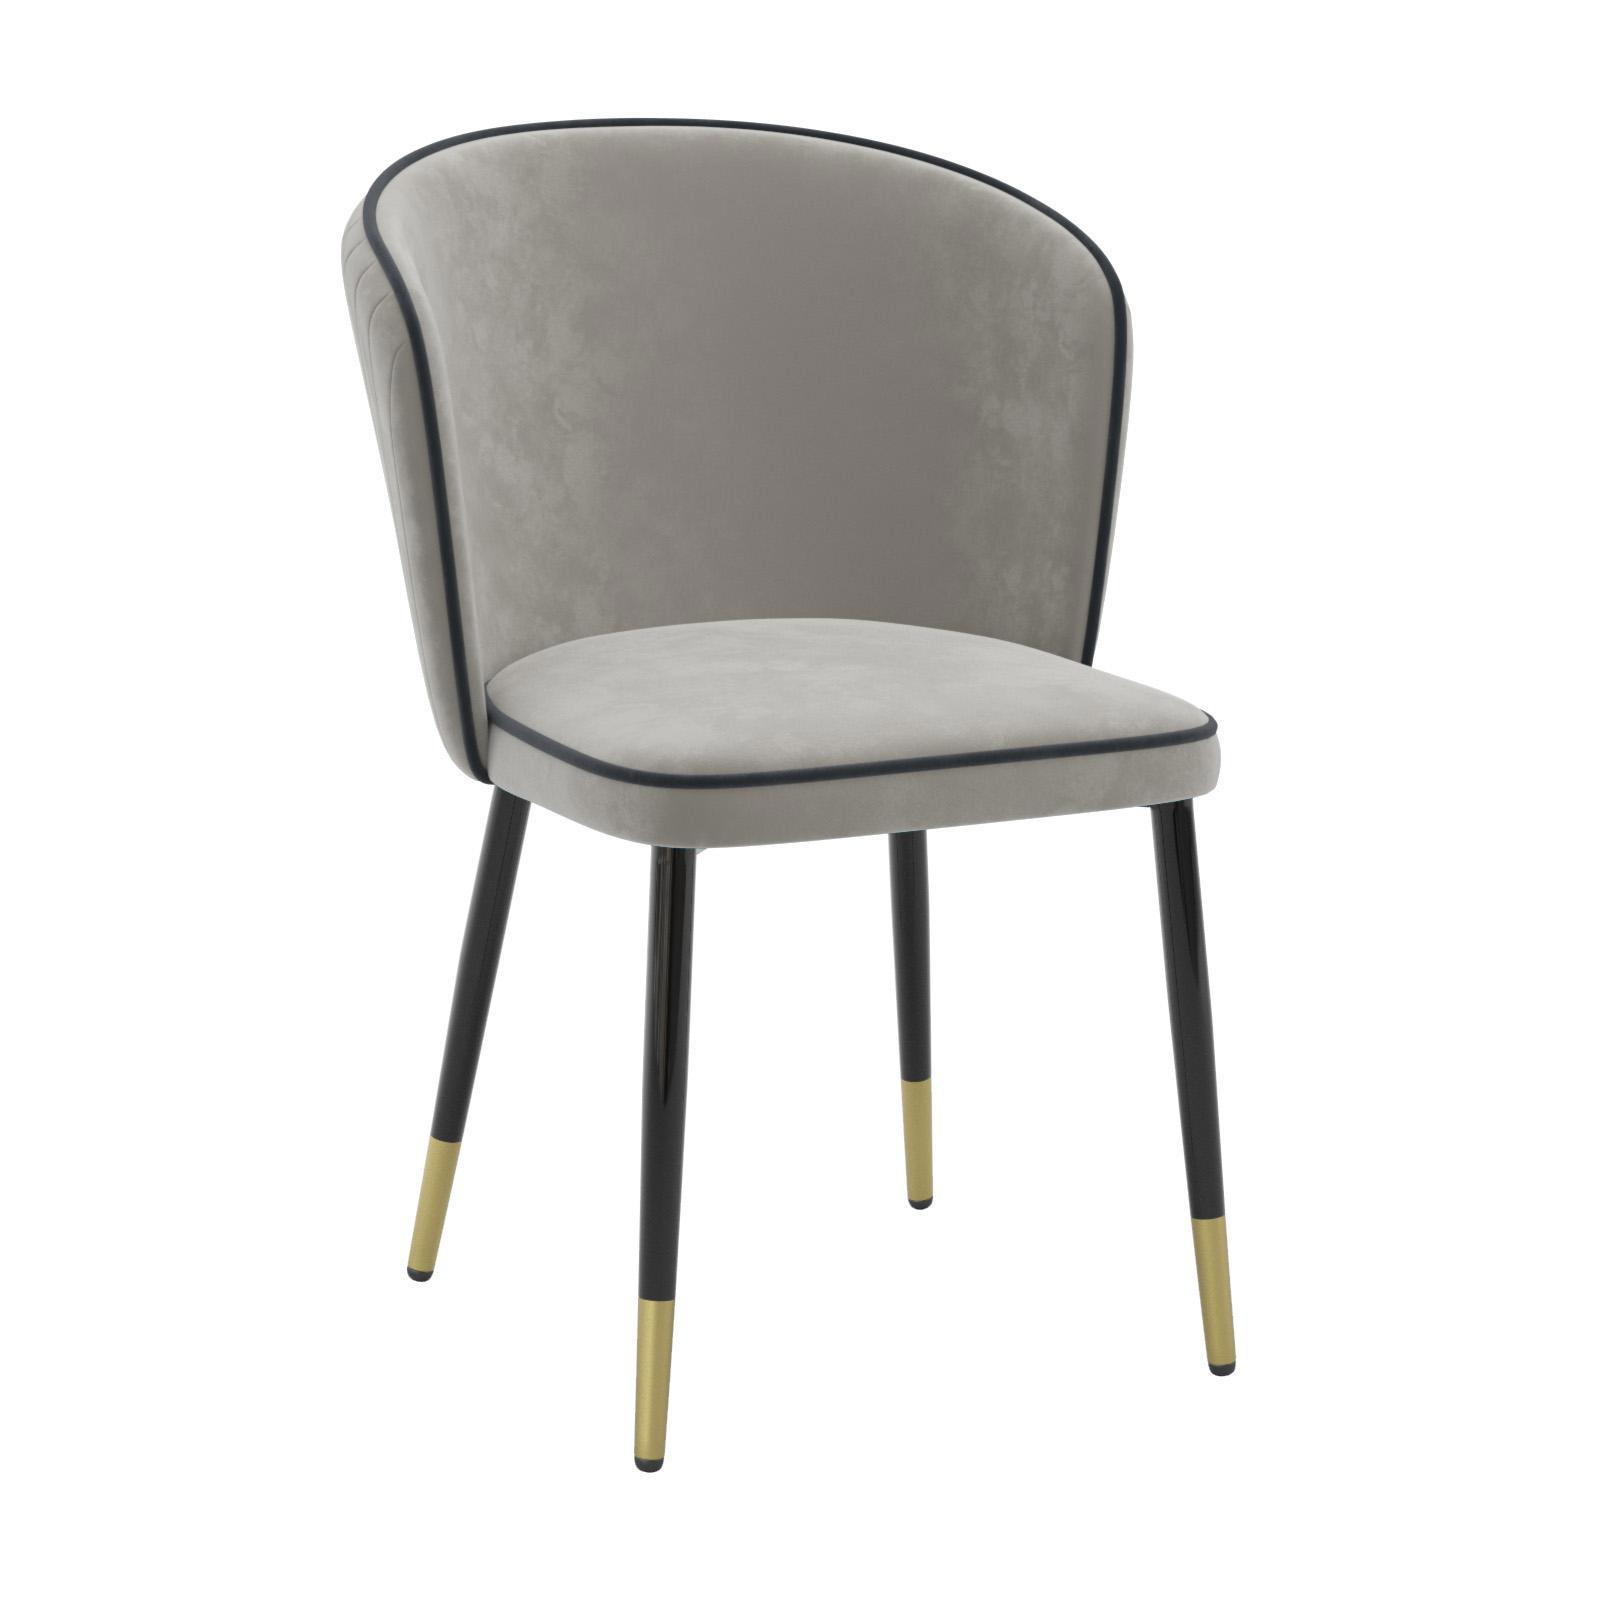 90200439 Кухонный стул мебель для спальни/гостинной цвет цветло-серый Оникс STLM-0130720 MILAVIO